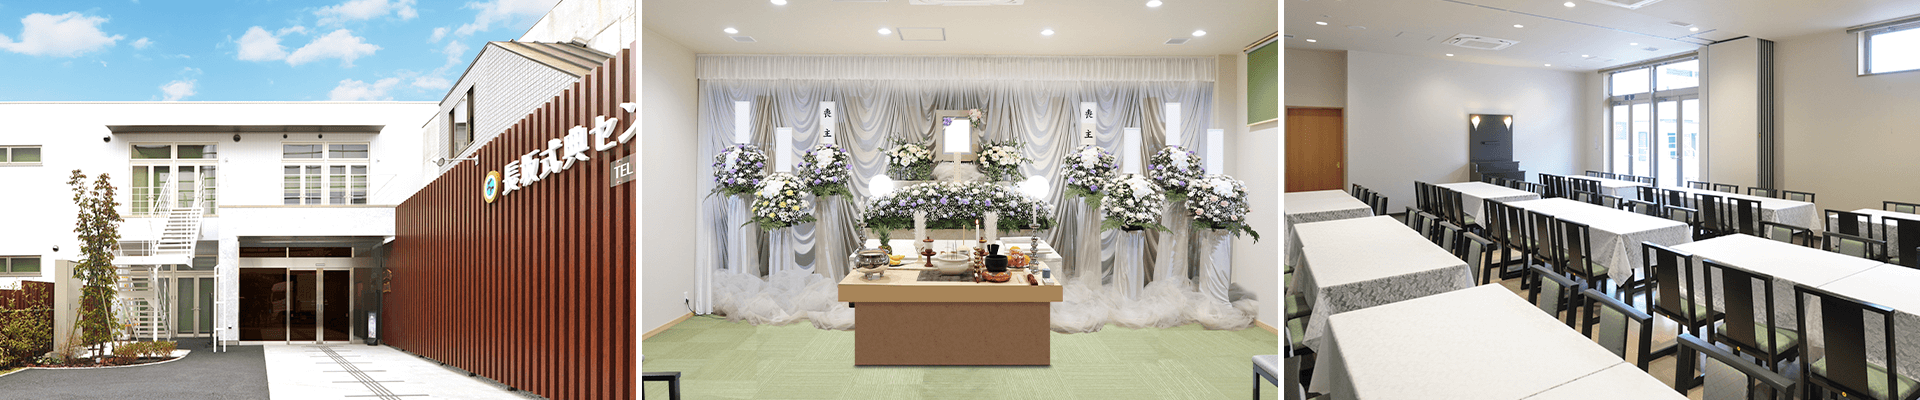 葬儀・葬式・家族葬なら16.5万円からできる長坂式典センター 三鷹市の葬儀場一覧